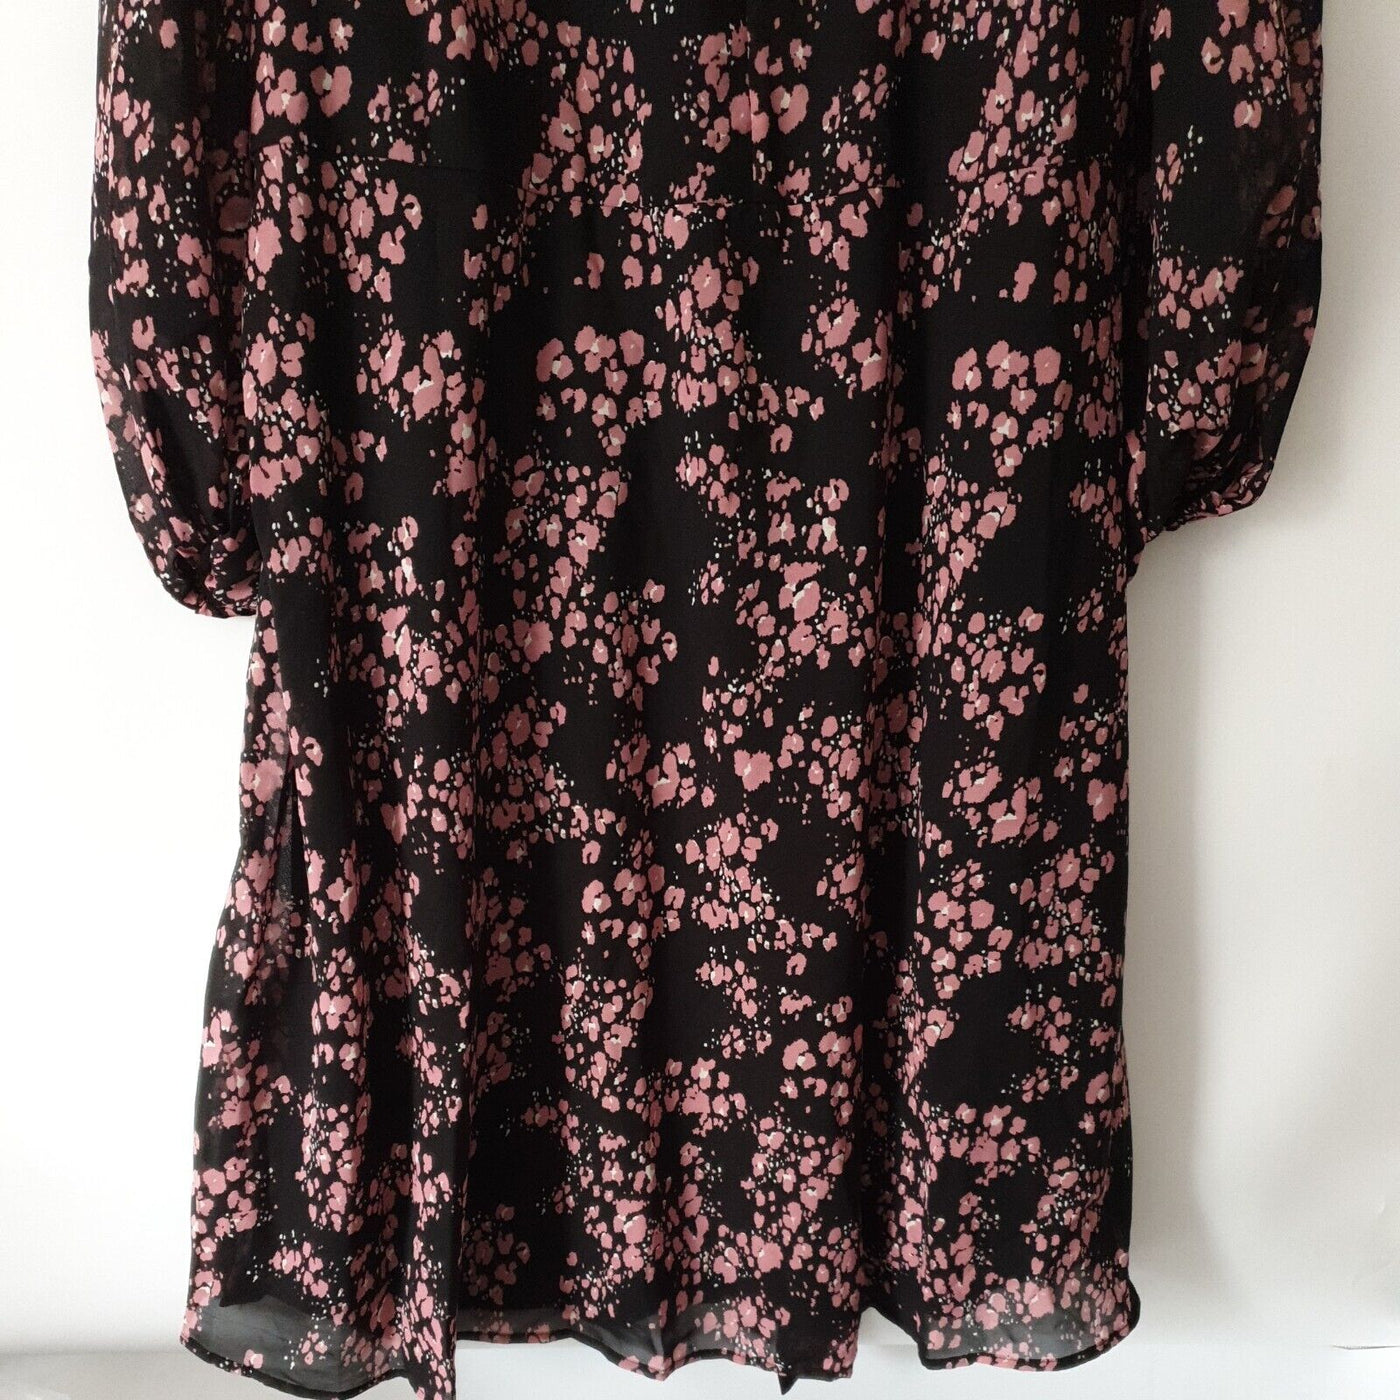 Yours London Black Floral Print Dress Size 20 ****Ref V343